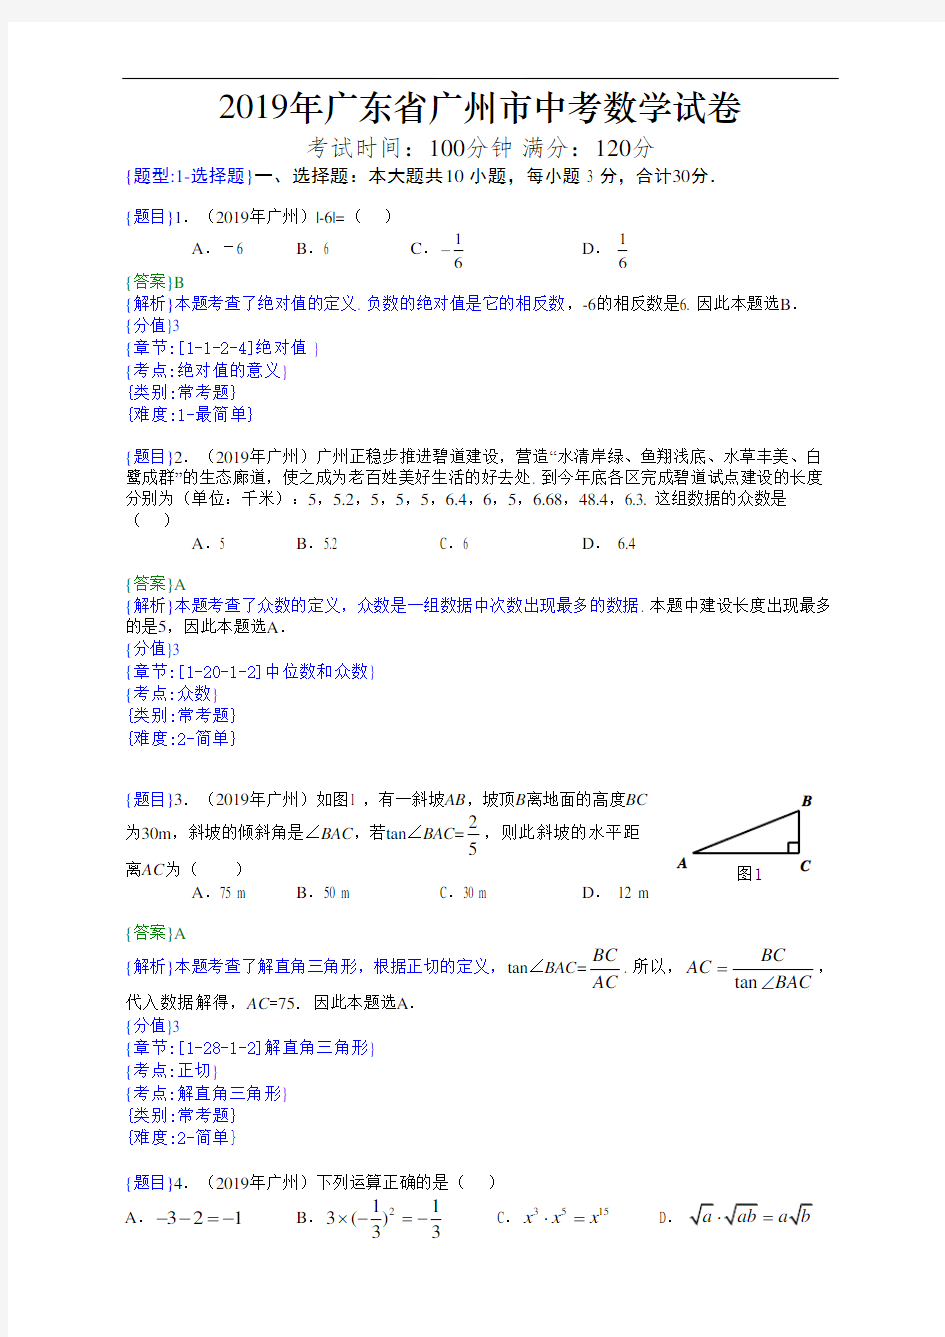 2019年广州中考数学试题(附详细解题分析)